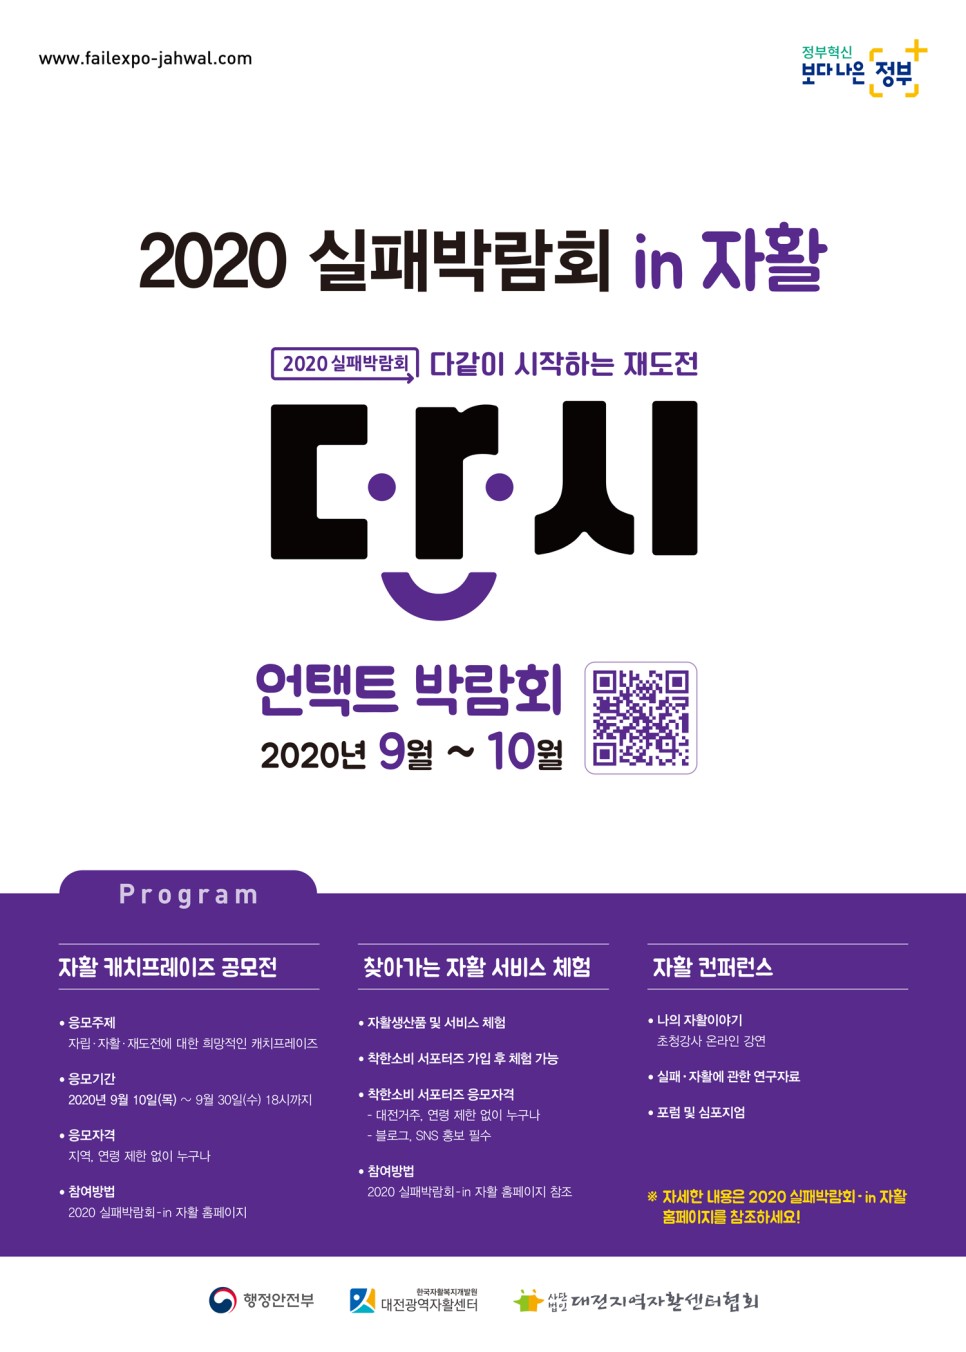 대전광역자활센터와 함께하는 ’2020 실패박람회 in 자활’이 언택트 박람회로 열리고 있다.